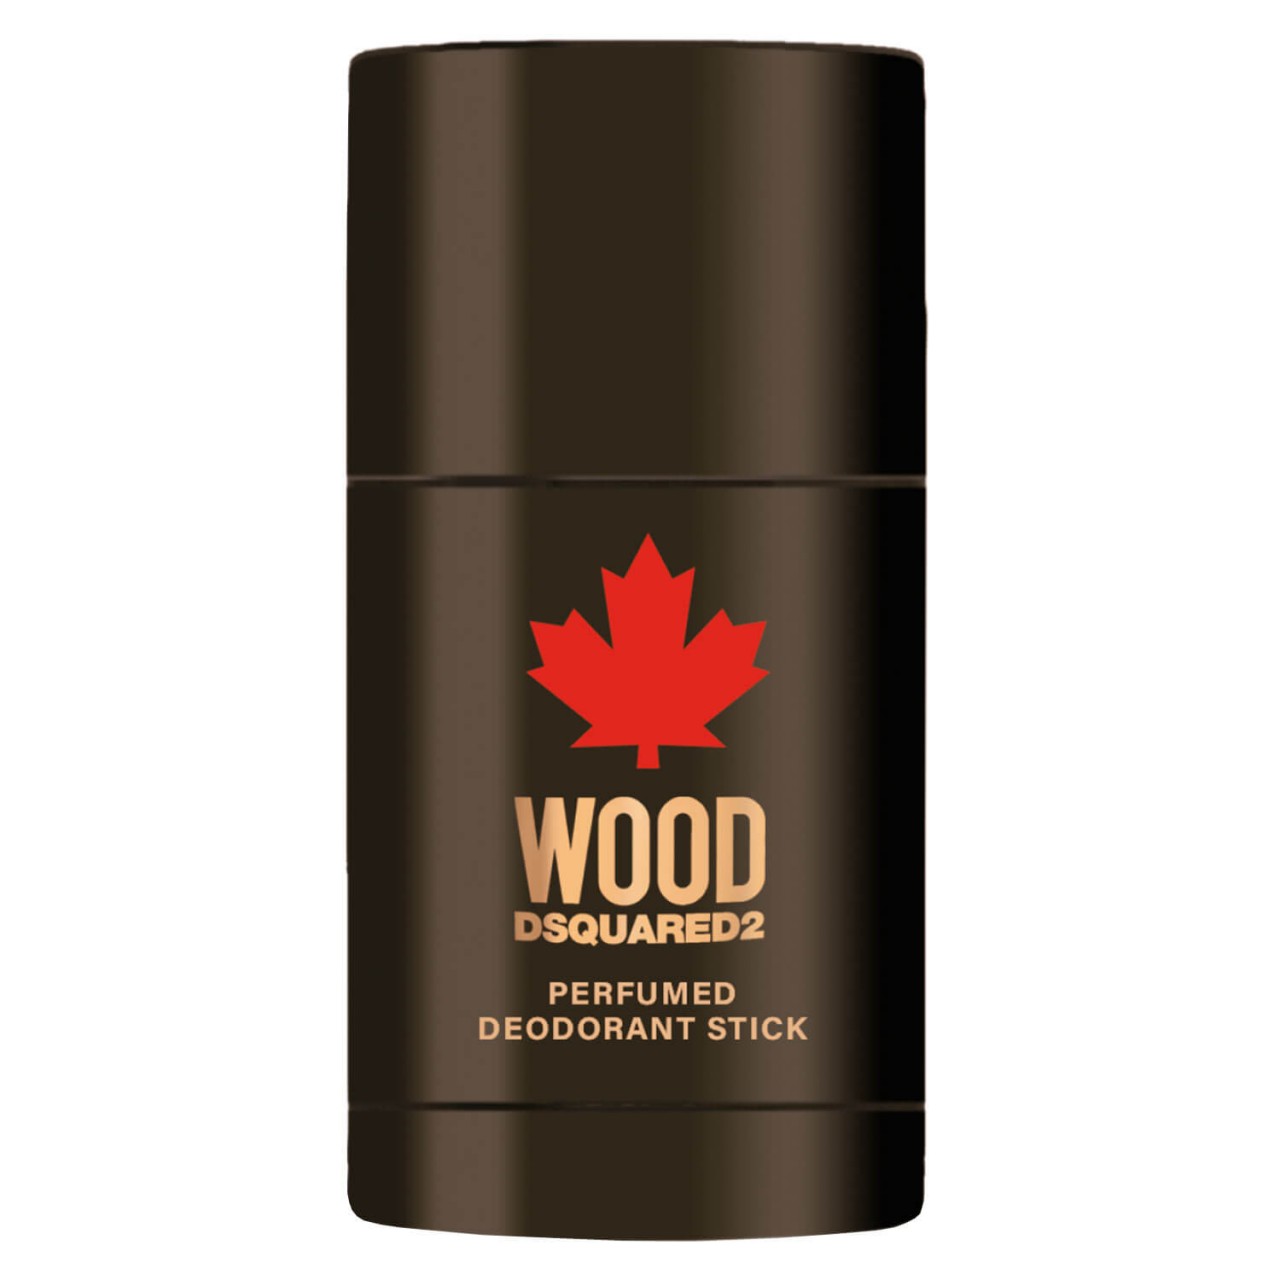 DSQUARED2 WOOD - Pour Homme Deodorant Stick von DSQUARED2